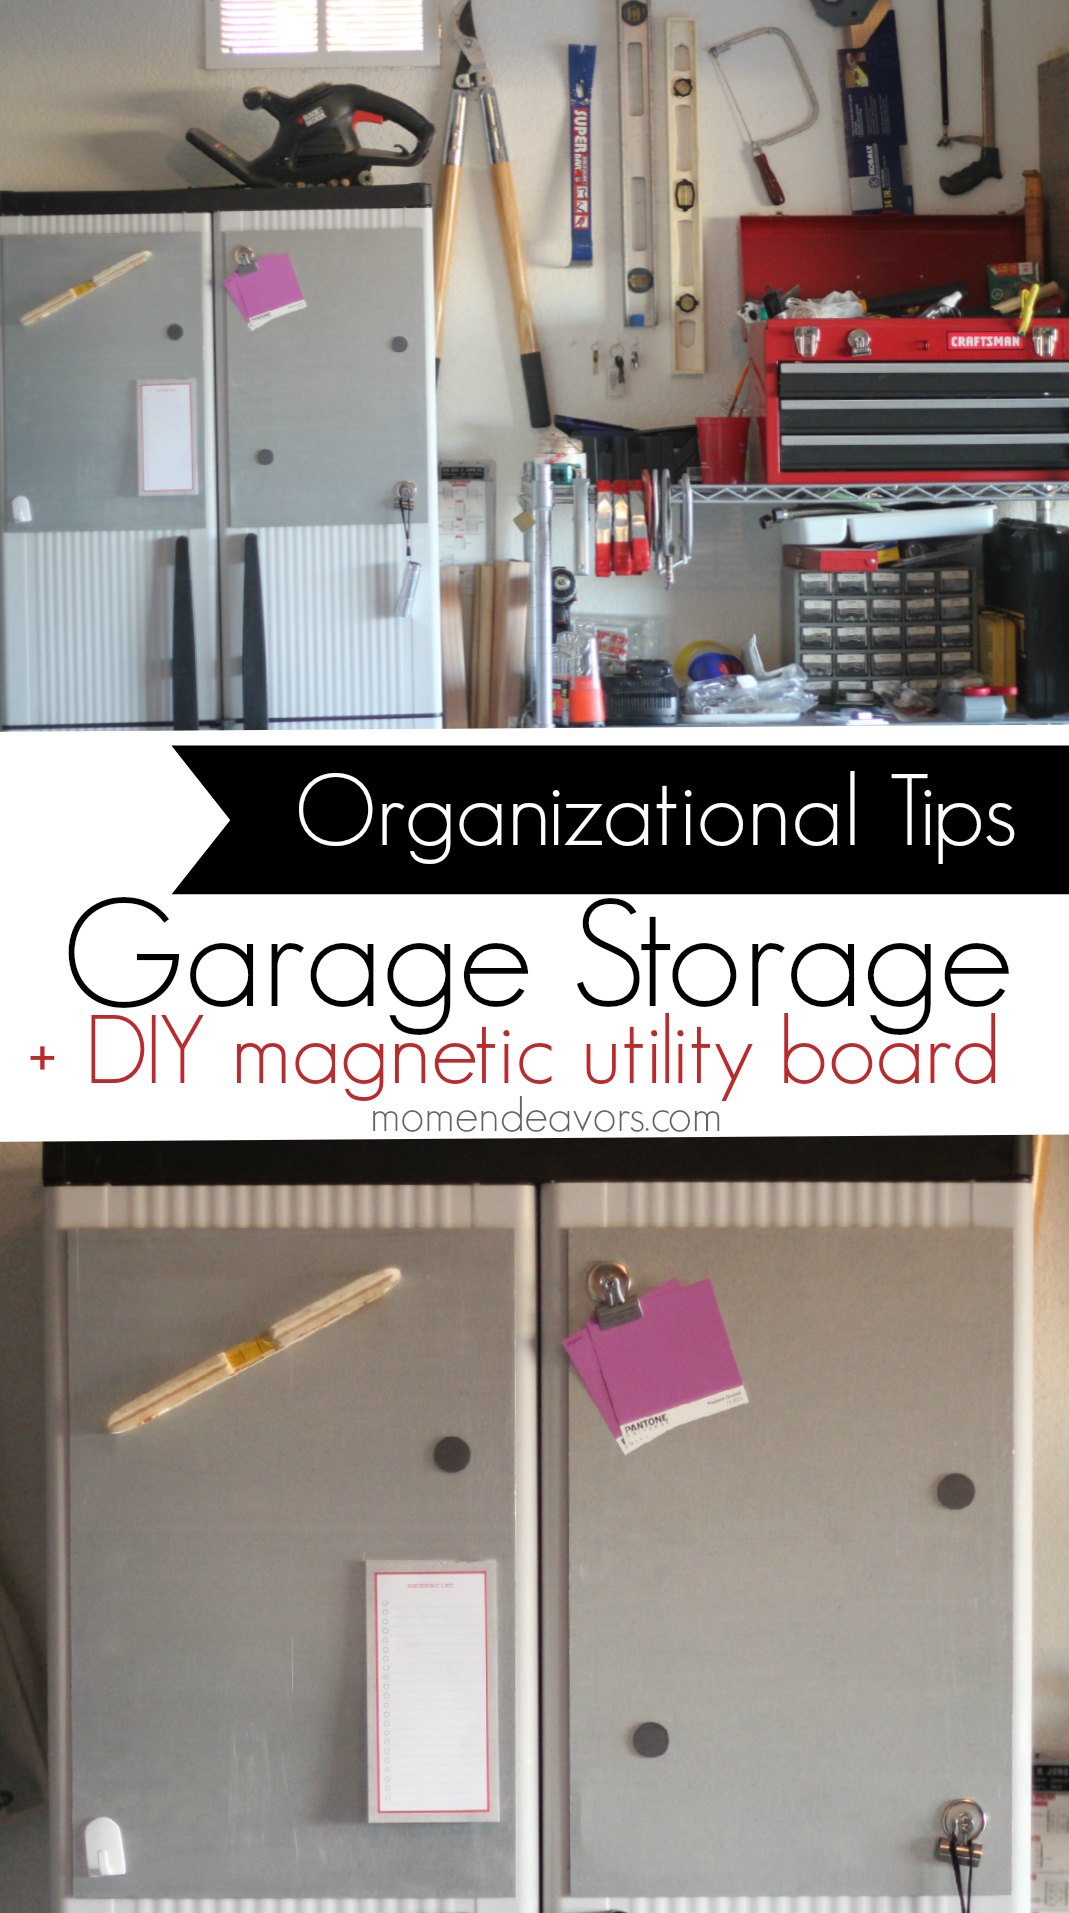 Home Organization: Garage Storage Ideas + DIY Magnetic Utility Board